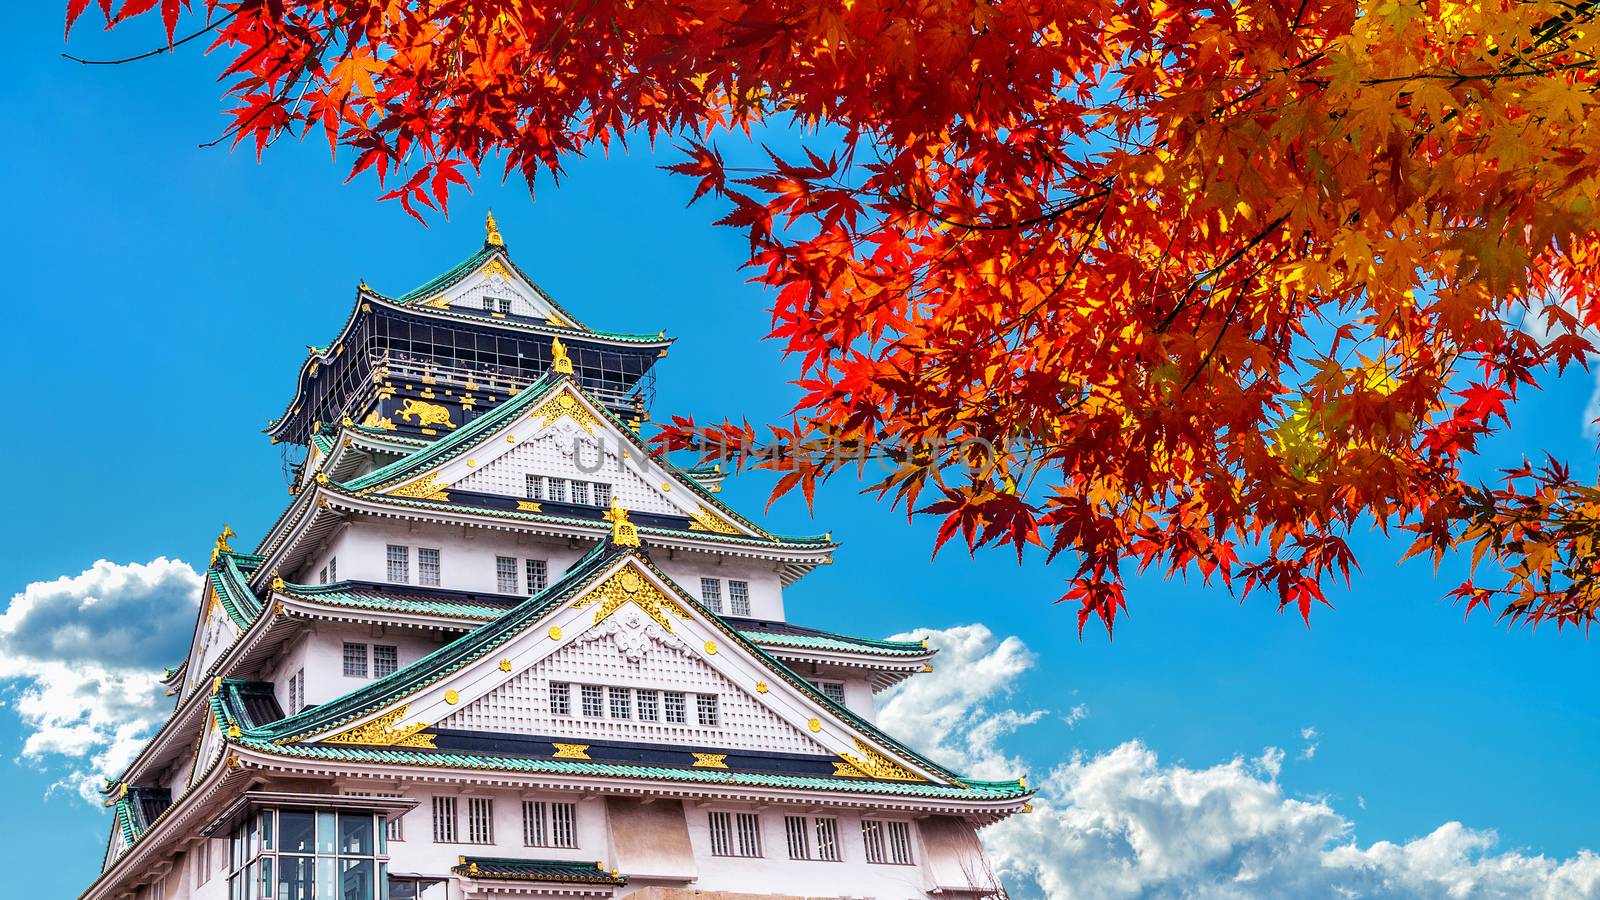 Autumn Season and Osaka castle in Japan.